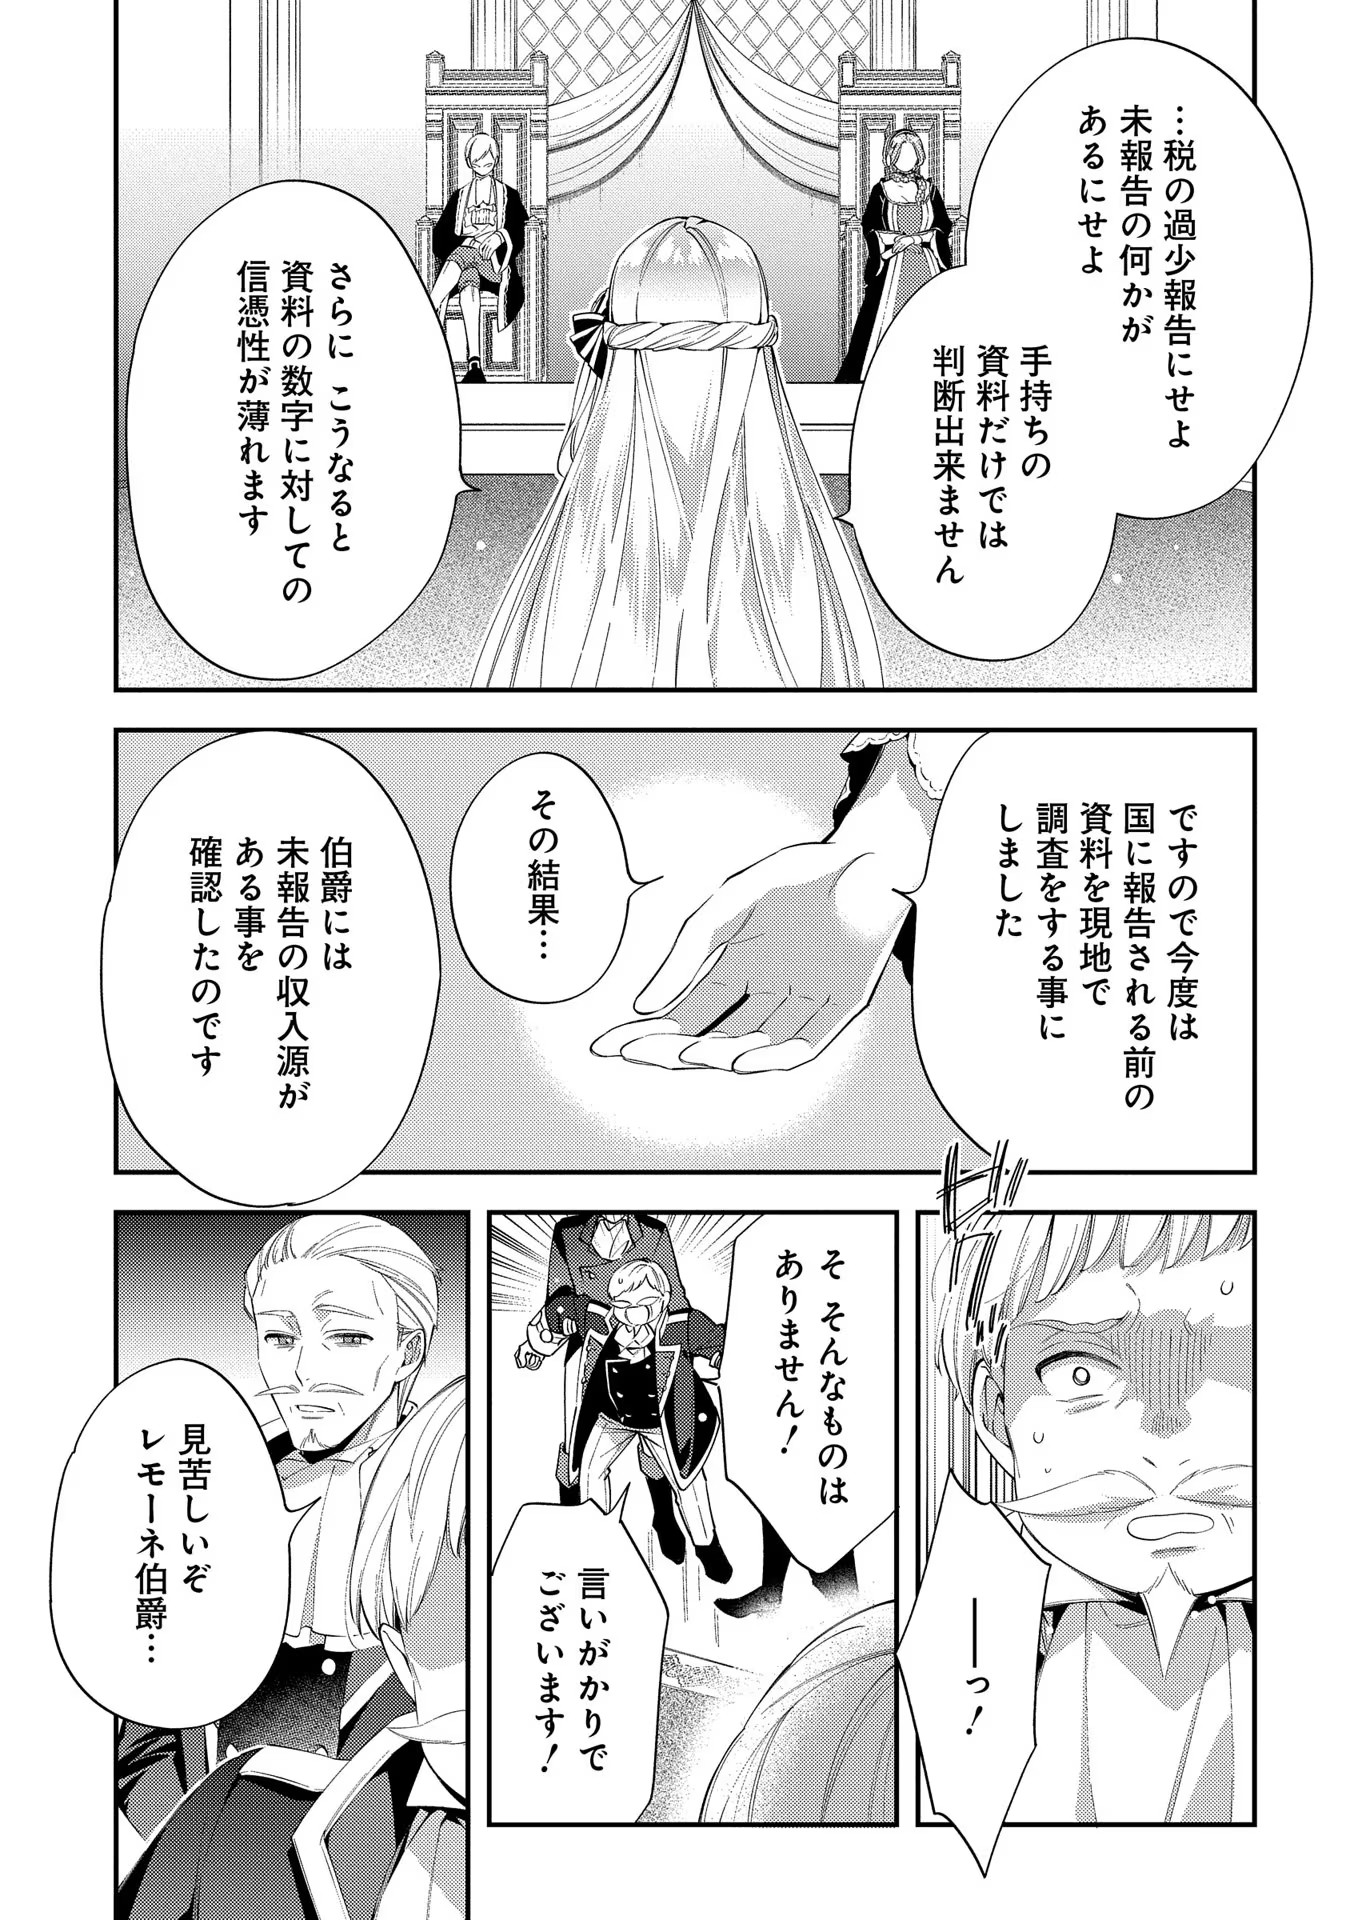 Outaishi ni Konyaku Hakisareta no de, Mou Baka no Furi wa Yameyou to Omoimasu - Chapter 16 - Page 19